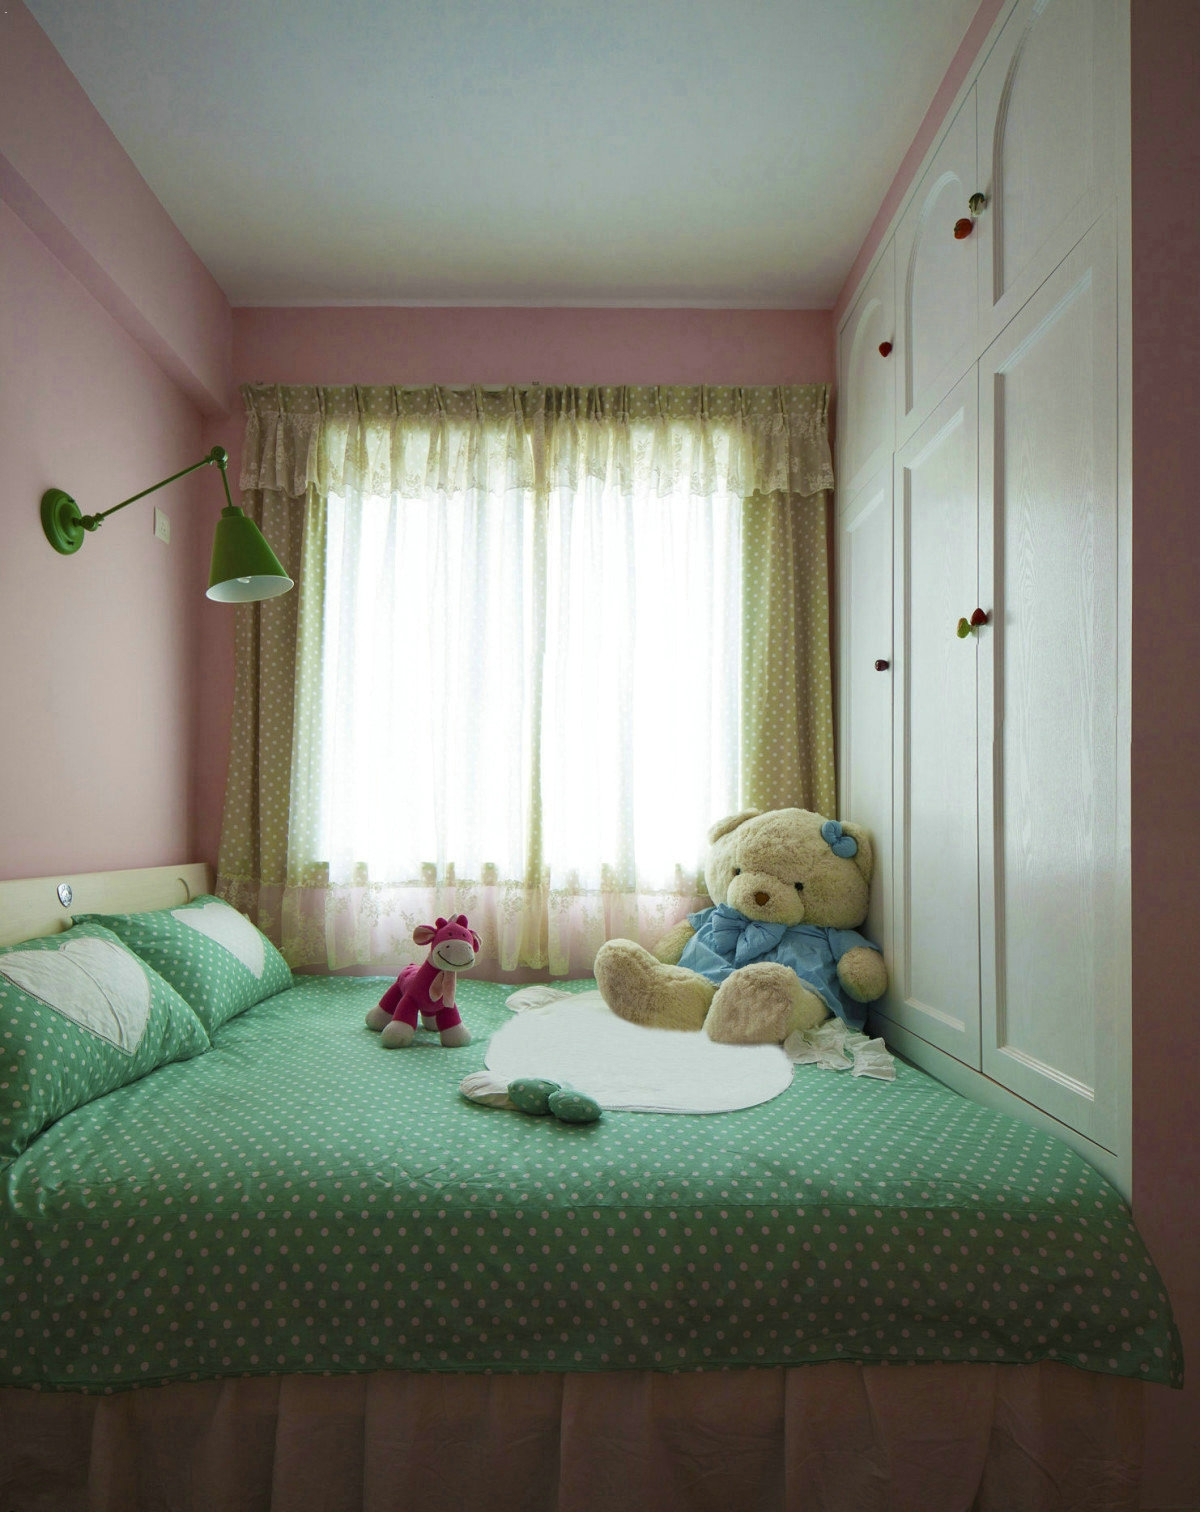 次卧是小朋友的房间，粉色的墙壁，波点床铺，毛绒绒的小熊，处处透露着可爱。